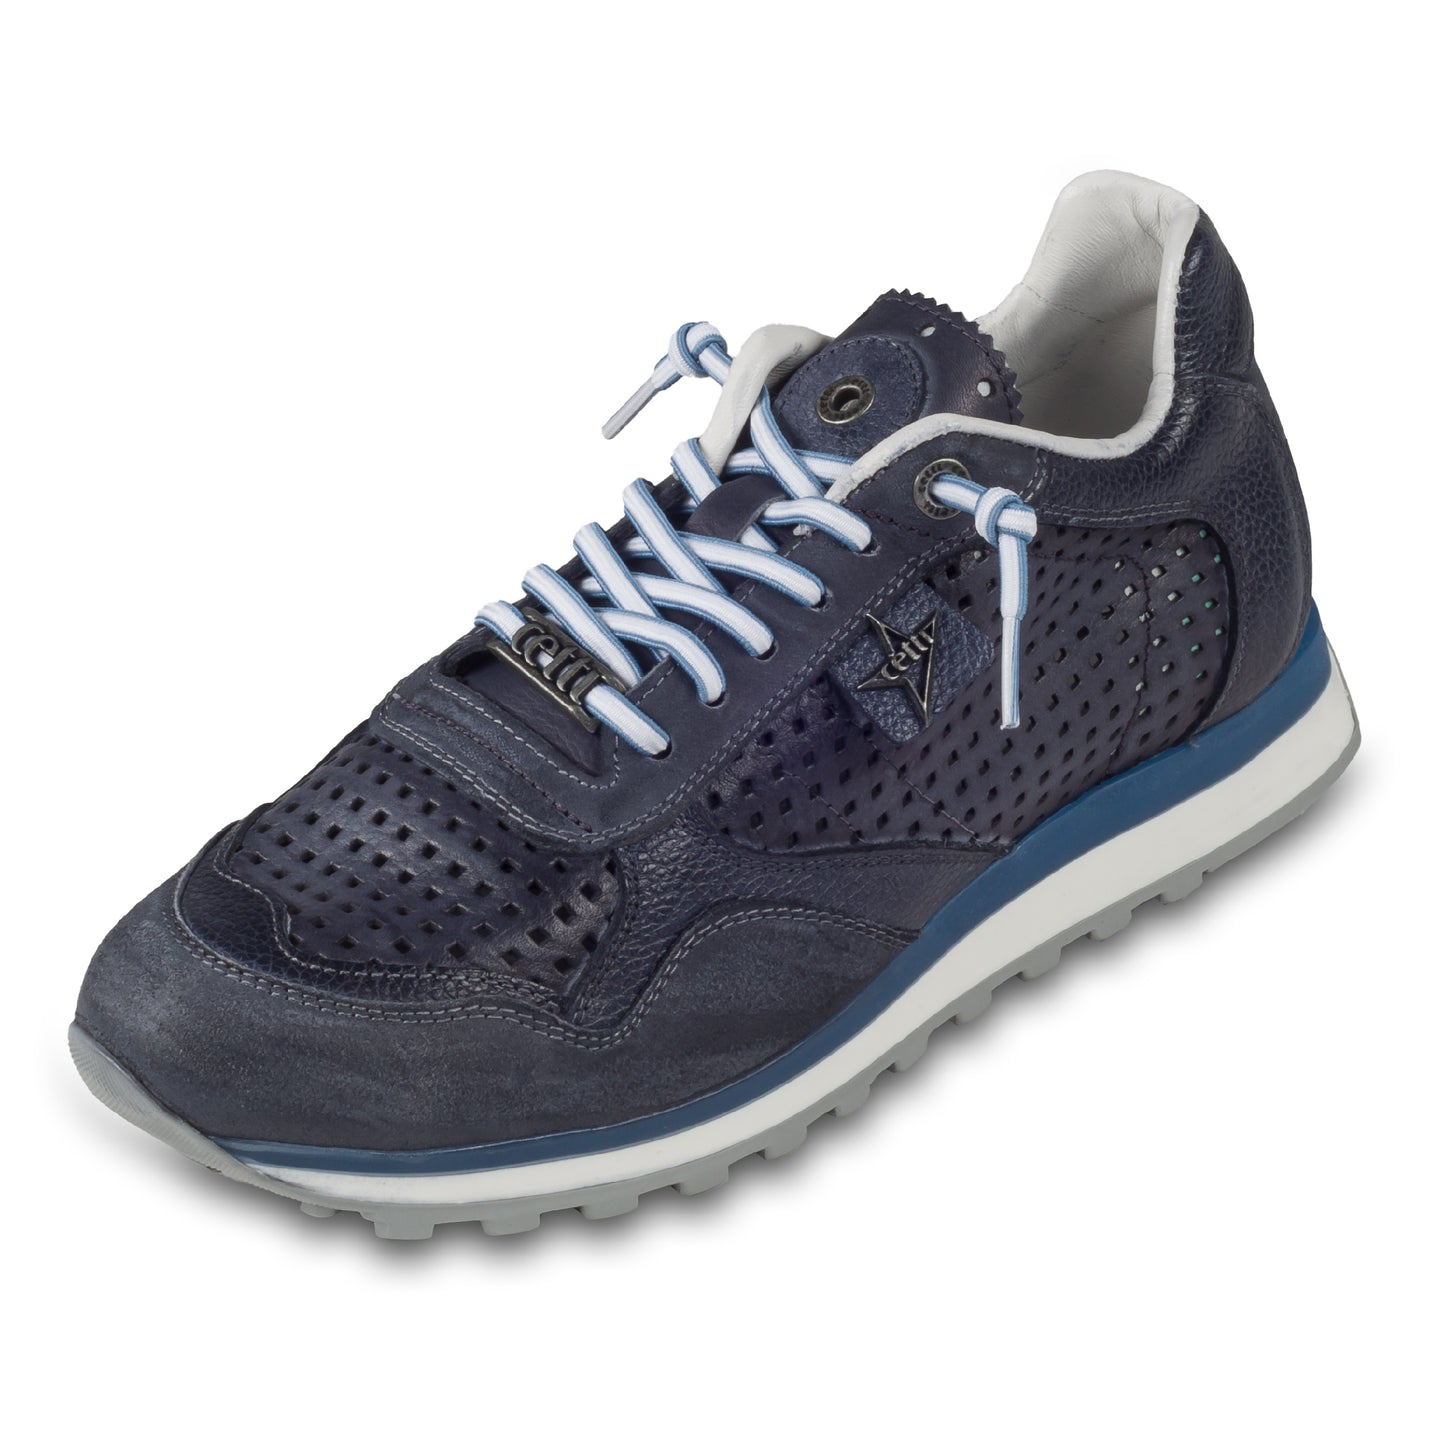 CETTI Herren Leder Sneaker, Modell „C848“ in dunkel blau / grau (used tin antracite), Made in Spain. Ansicht der Ferse und Sohlenunterseite. Schräge Ansicht linker Schuh.